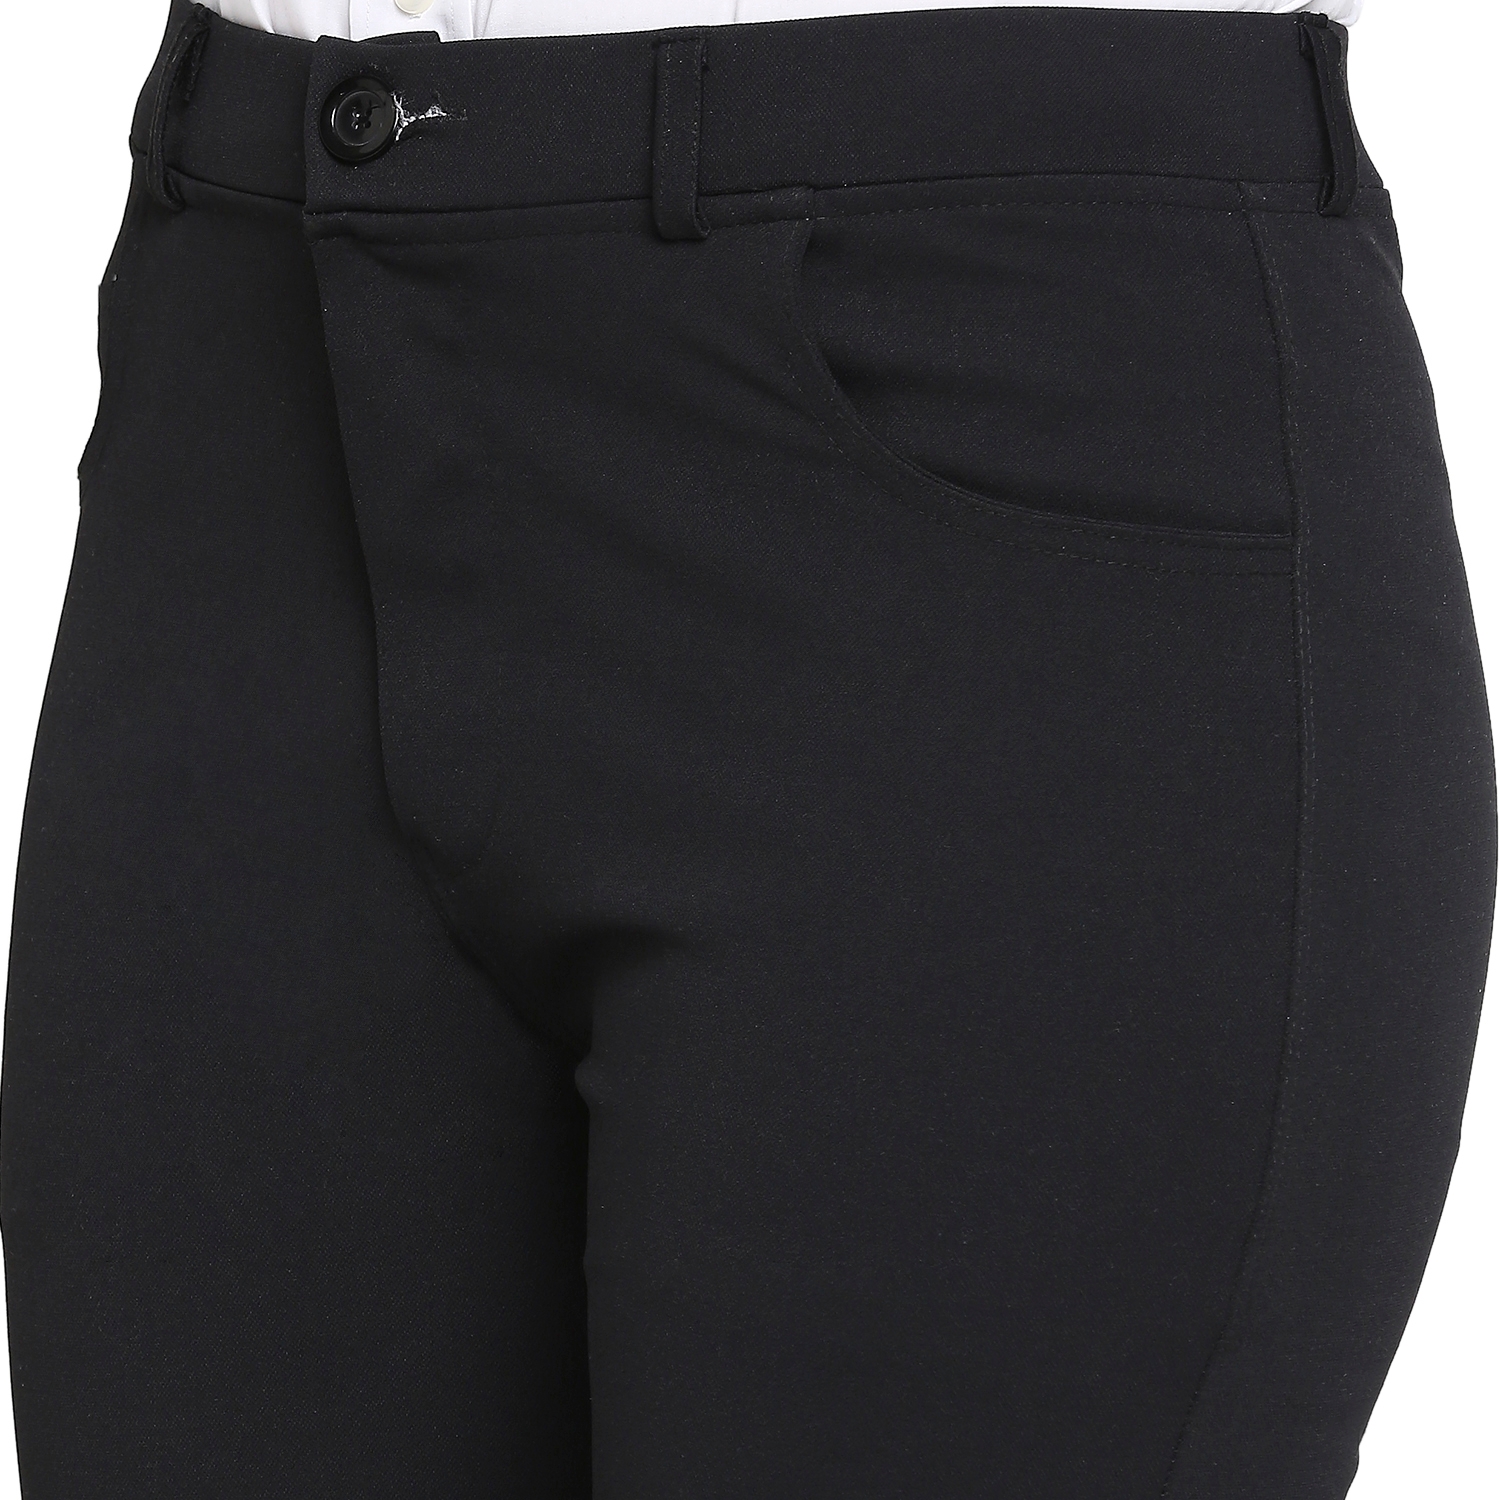 Jason Slim Fit Special Edition Black Cotton Pants | Slim fit cotton pants,  Slim fit pants men, Cotton pants